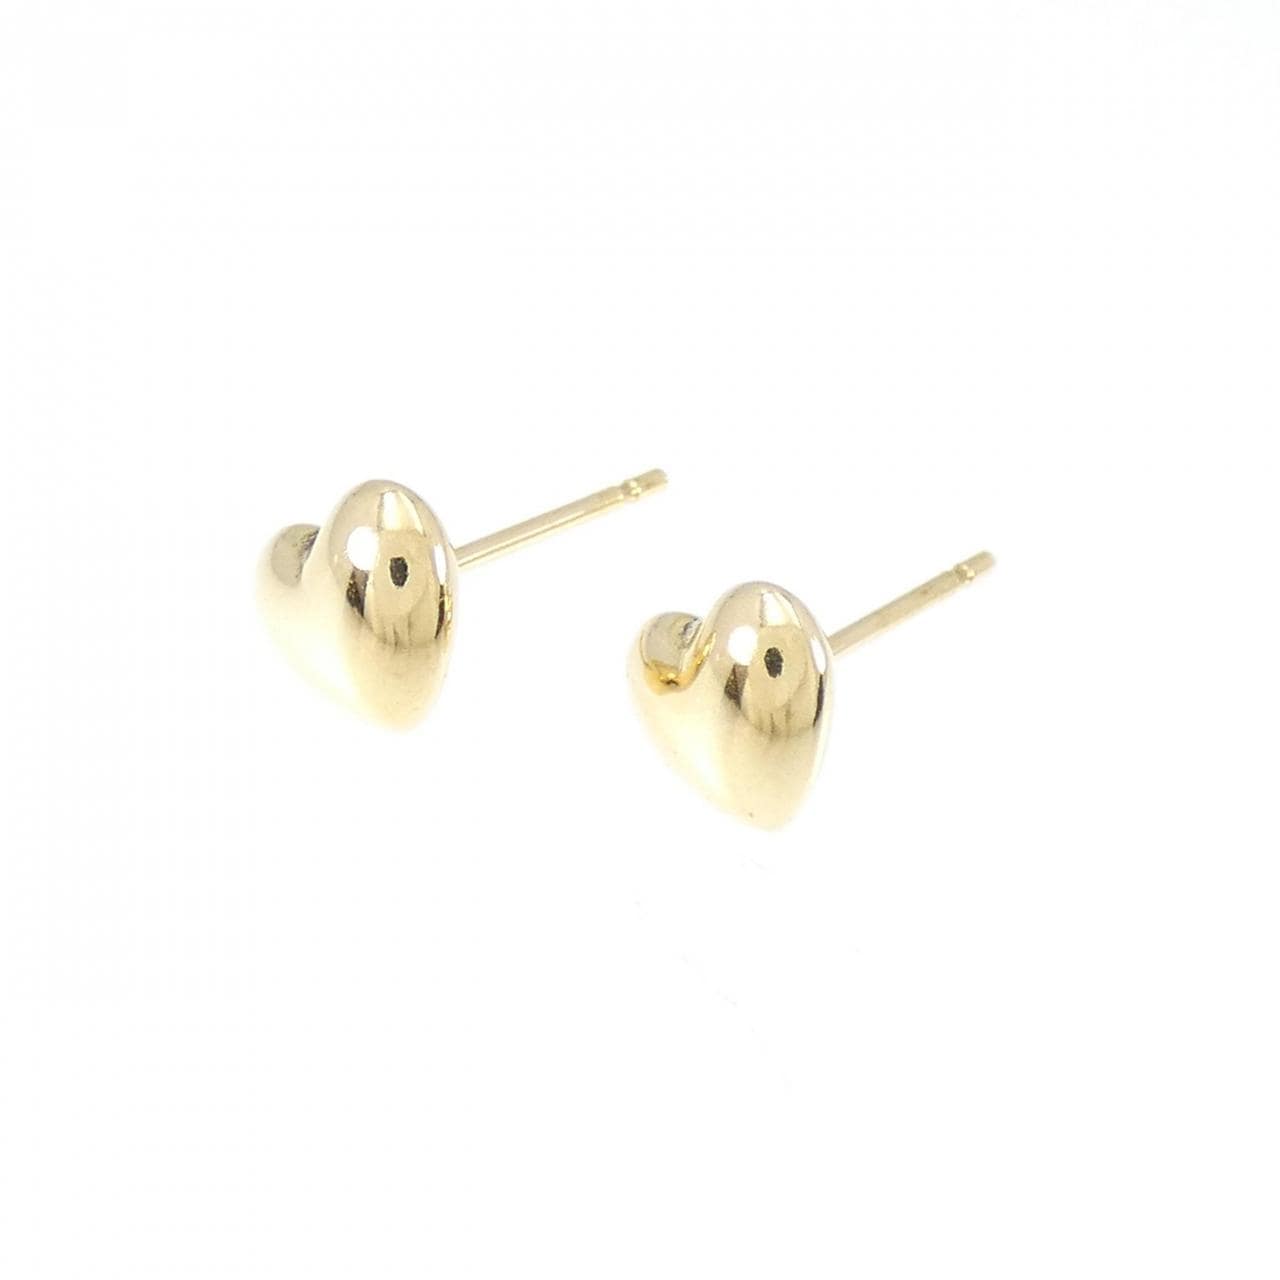 K18YG heart earrings